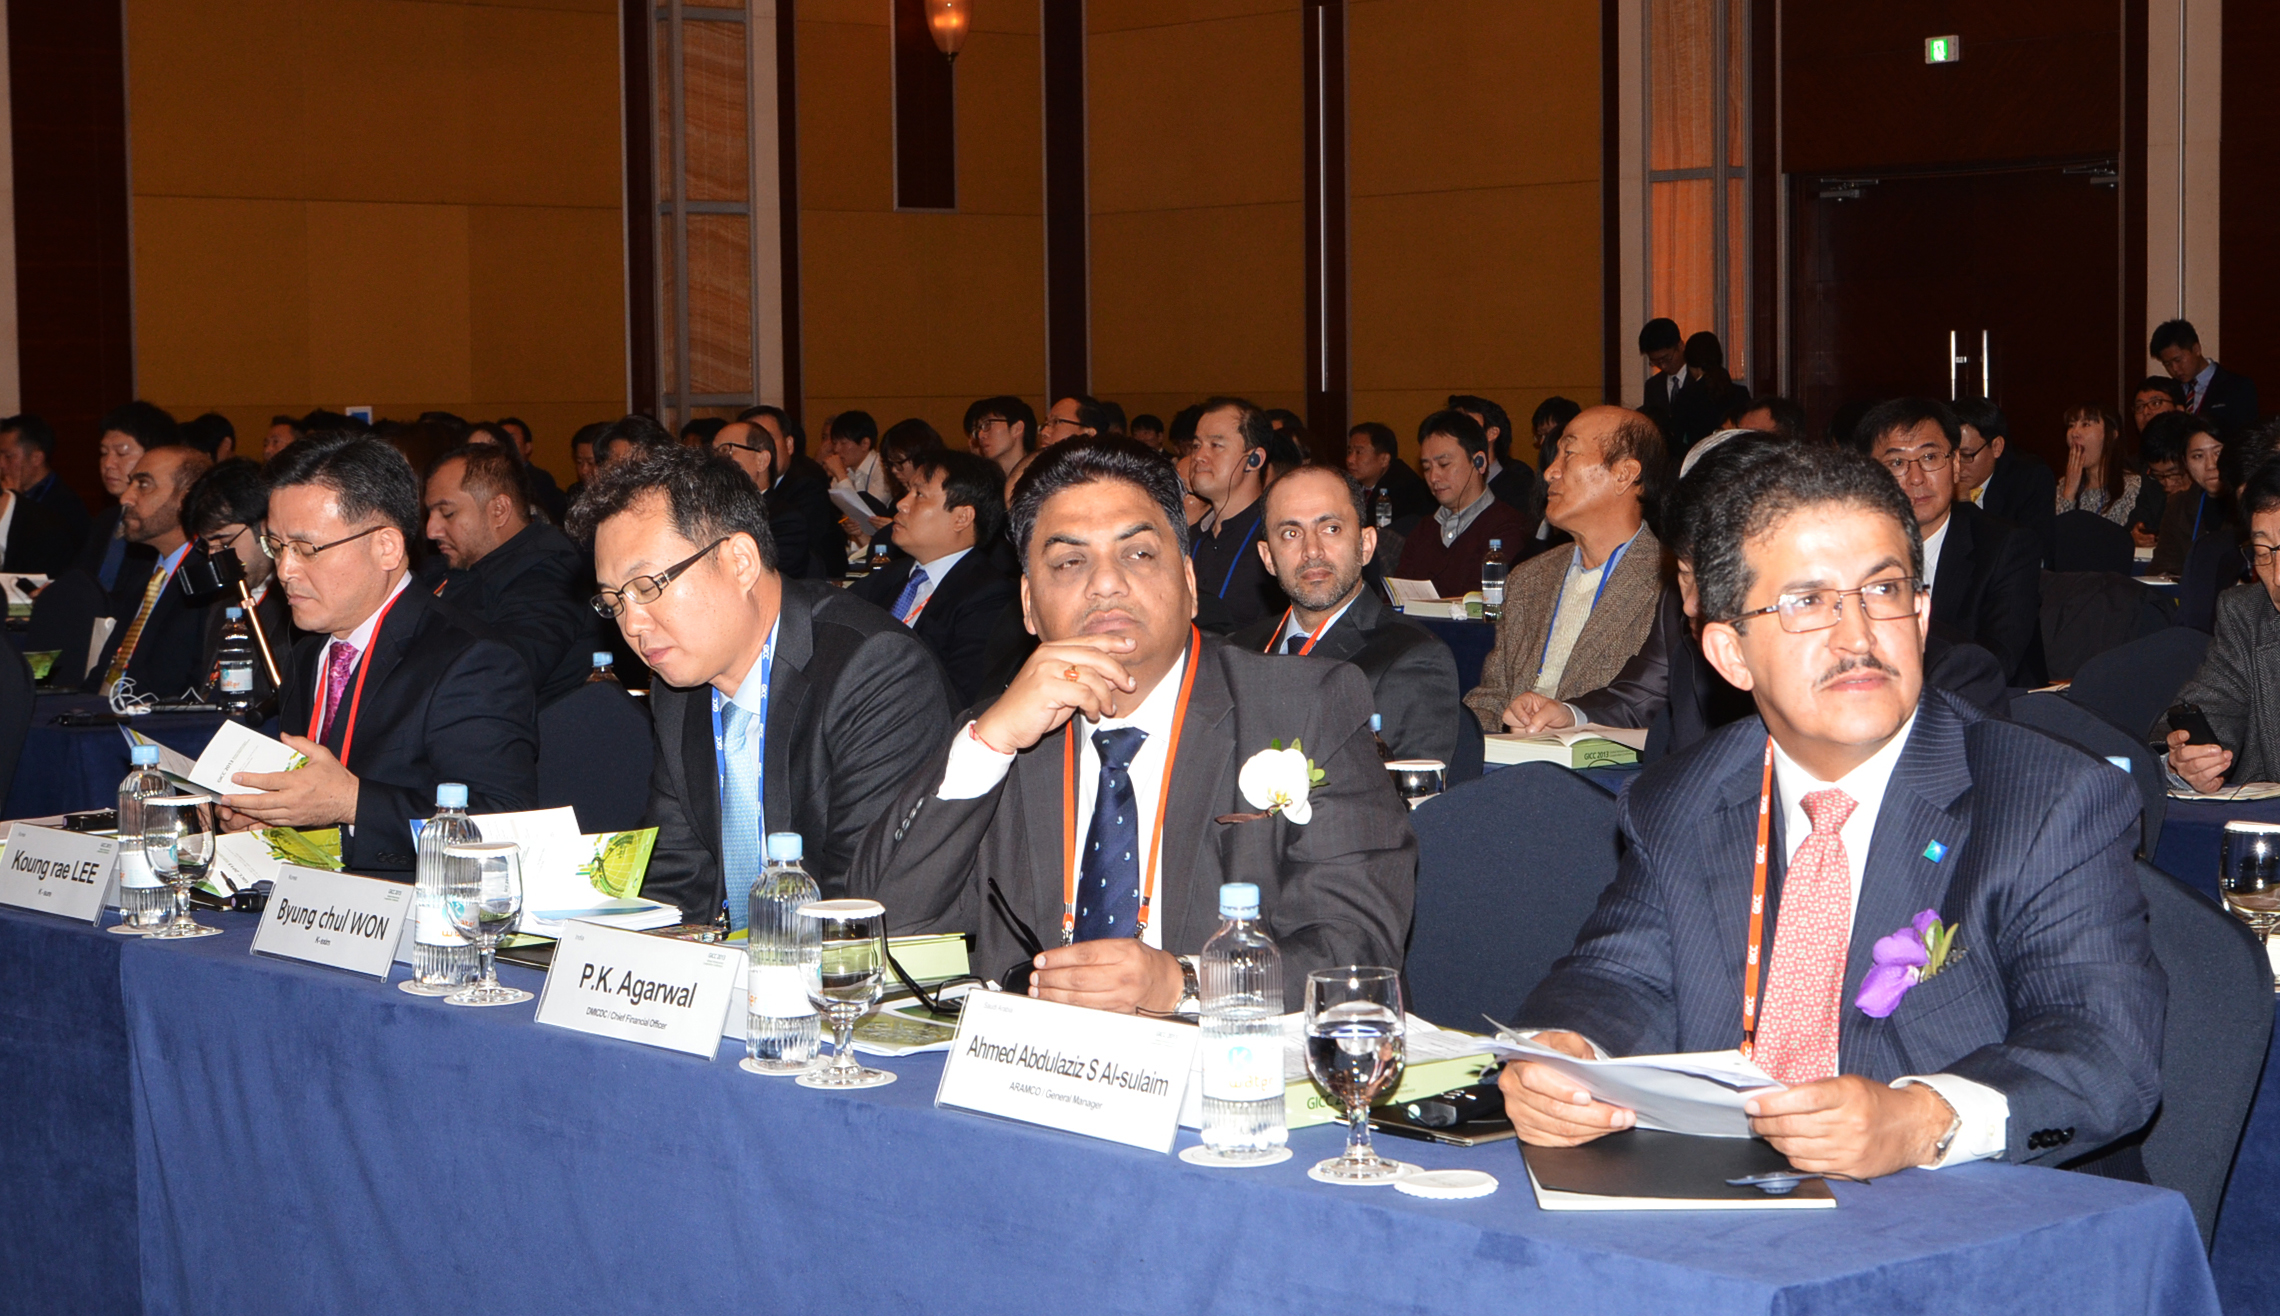 GICC 2013에 참석한 해외 발주처 관계자들 - 포토이미지